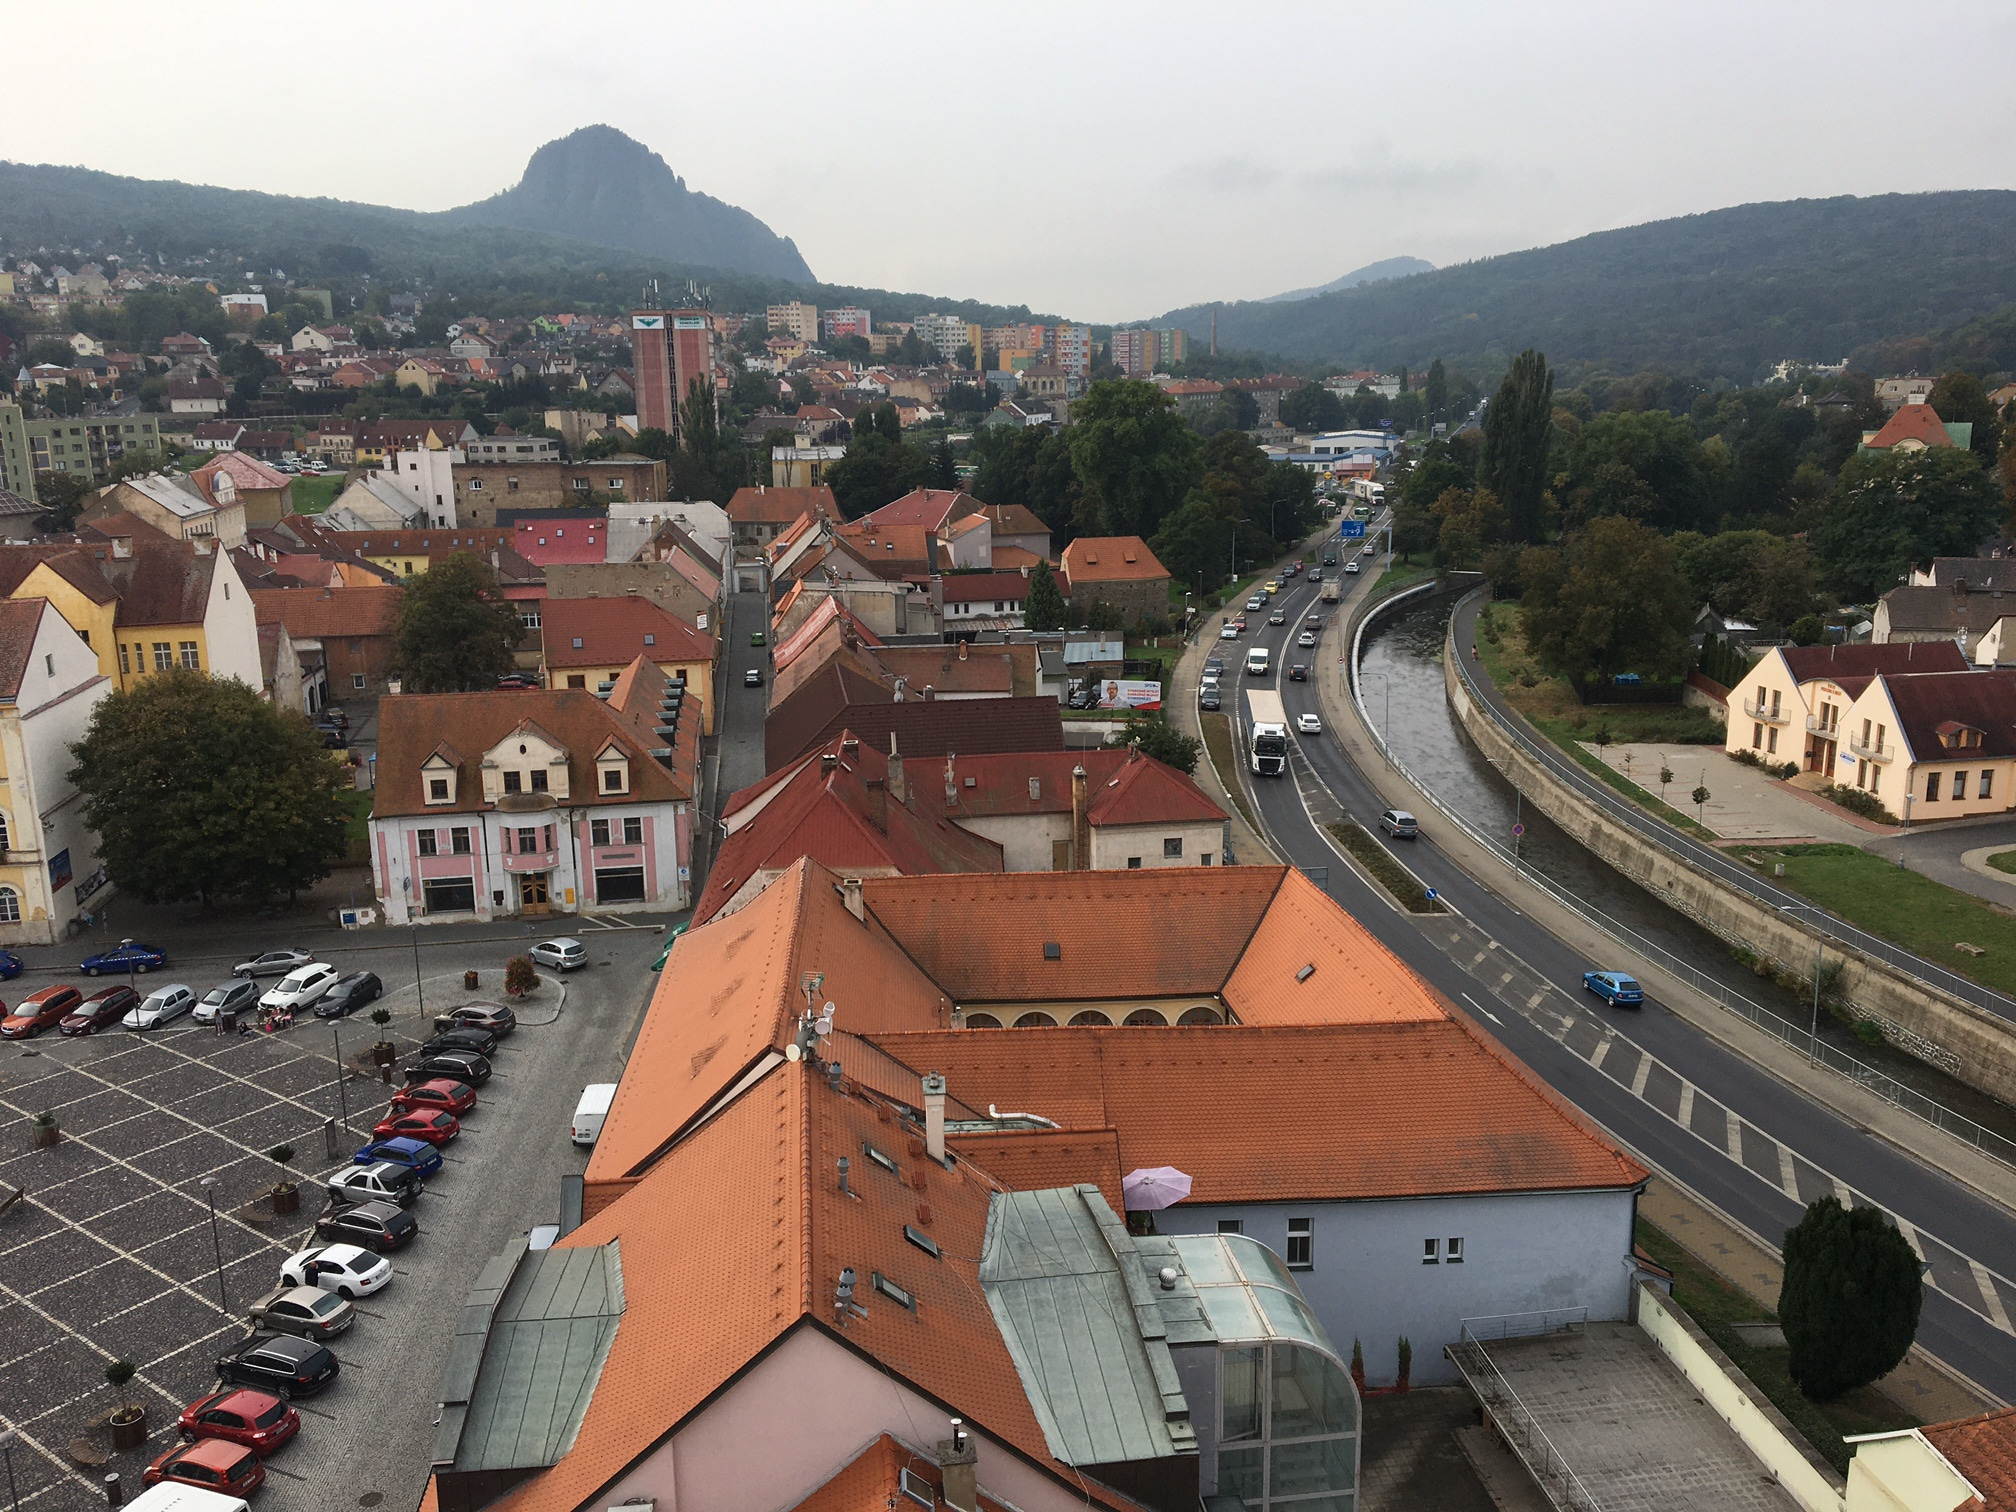 Bílina. Městem protéká stejnojmenná řeka a protíná ji rychlostní silnice spojující Most a Ústí nad Labem. Obliba hnutí ANO zde při letošních volbách stoupla o 2,6 procenta na celkových 43,3 %.